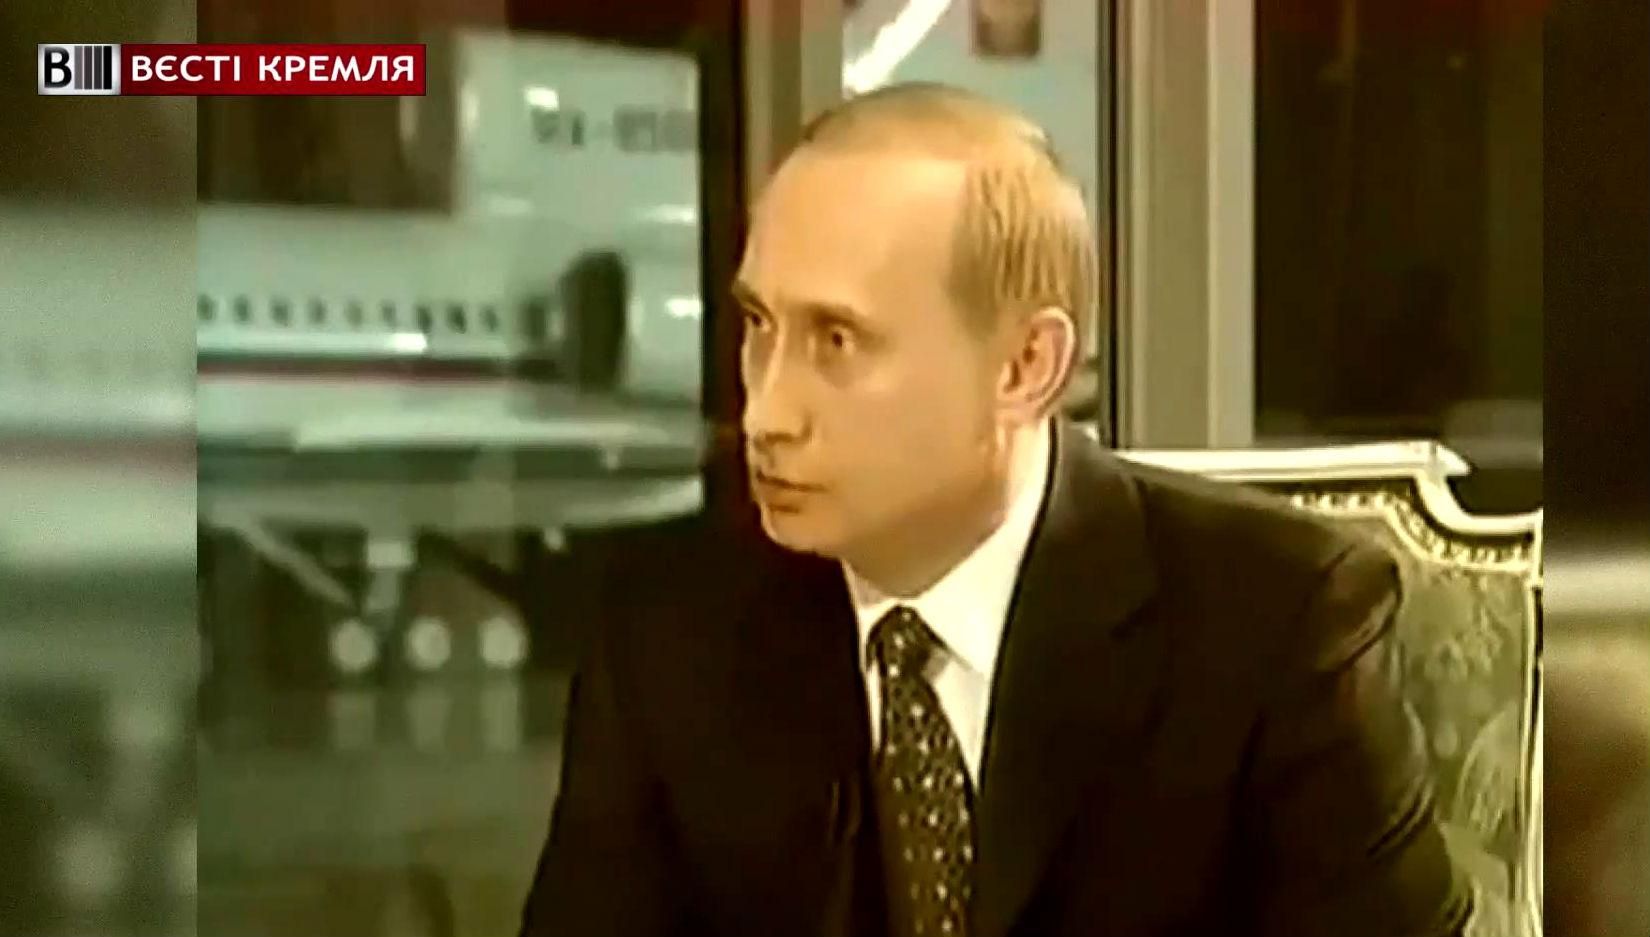 Якими були погляди Путіна 15 років тому?